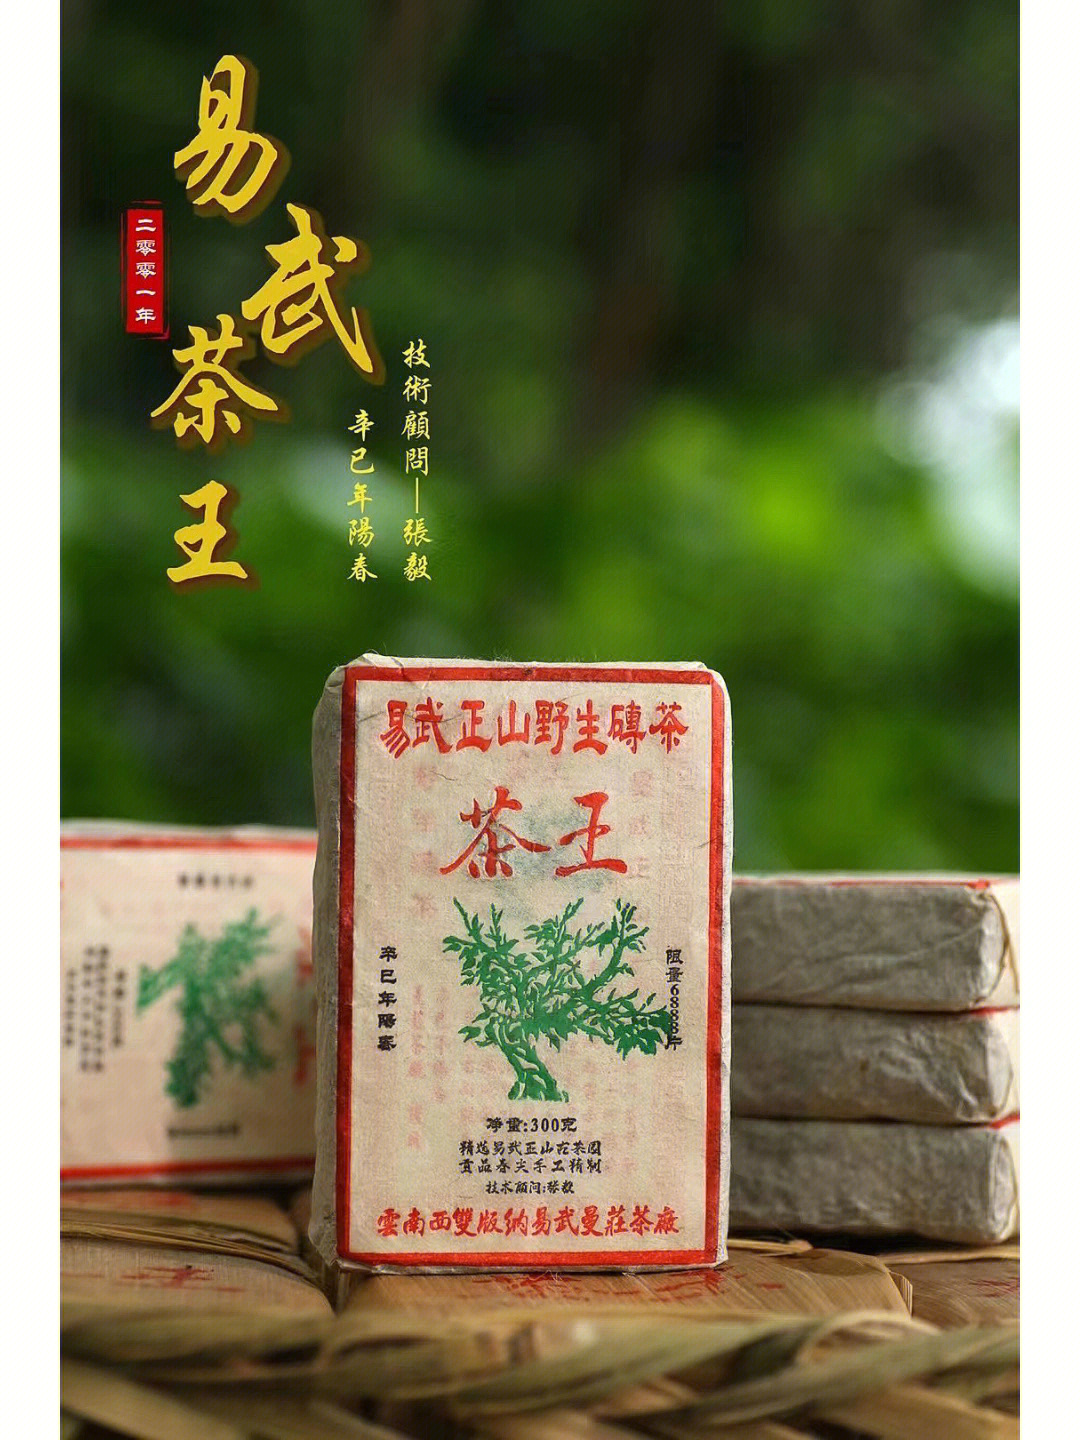 2001年茶王青砖技术顾问张毅中期定制茶